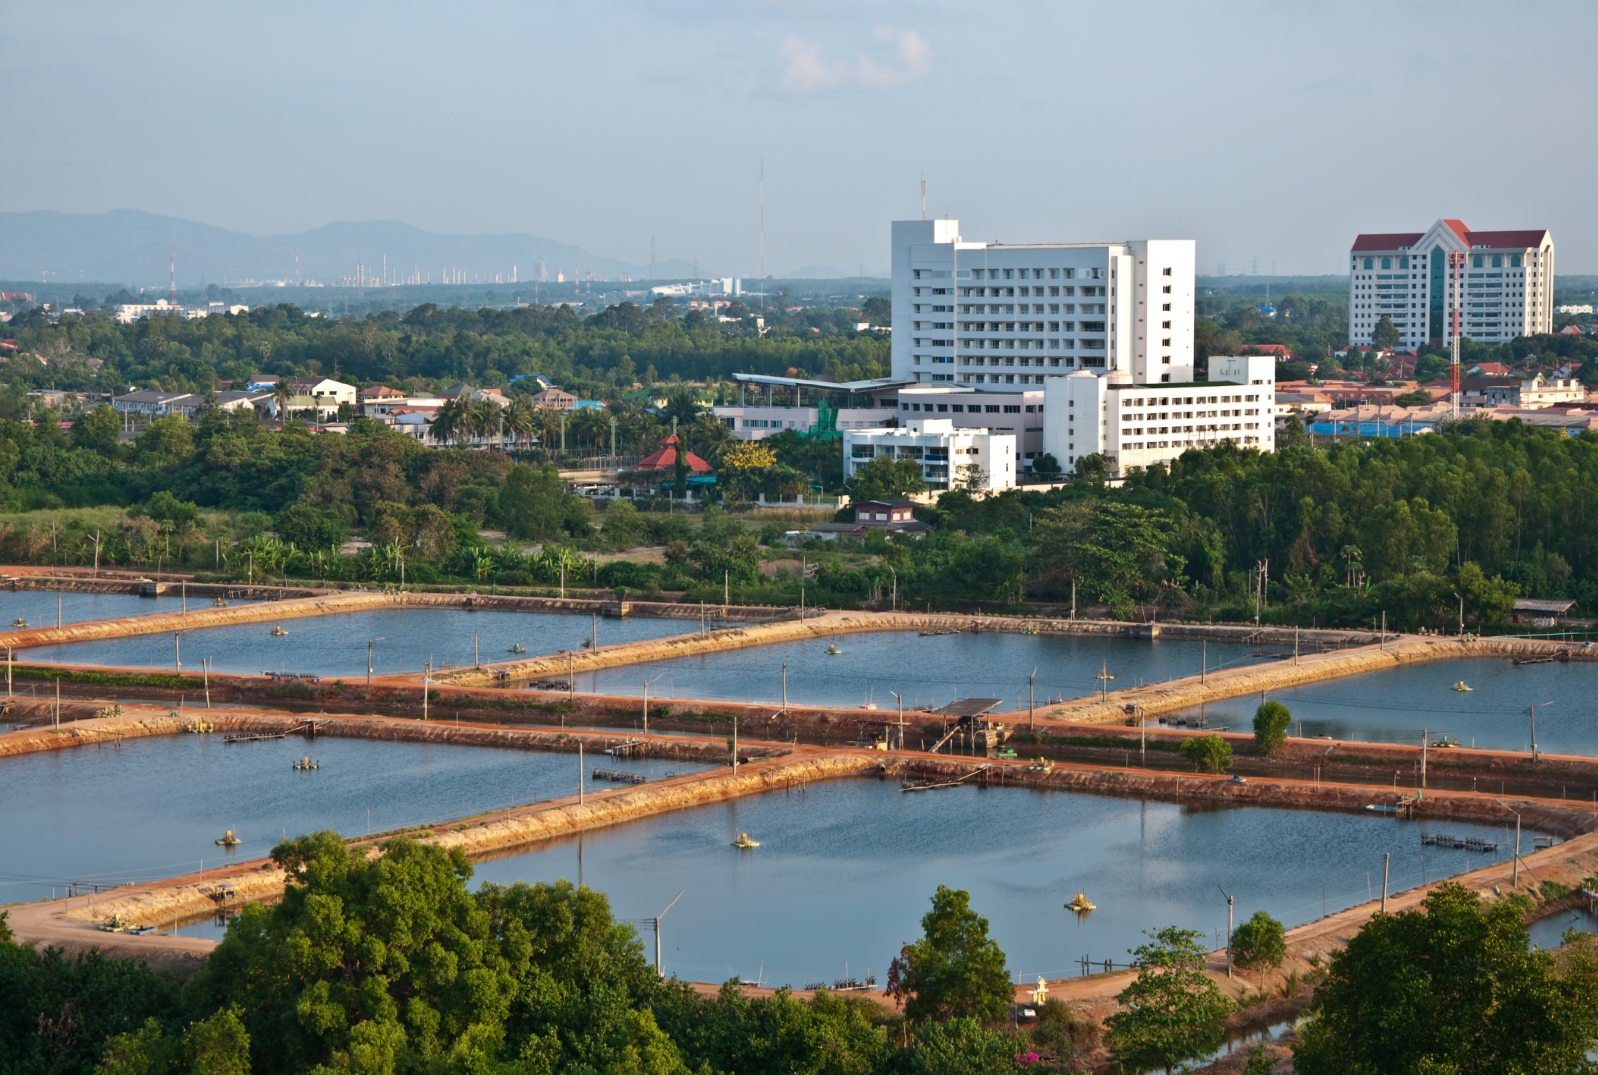 Trung tâm nghiên cứu tôm giống thủy sản lớn nhất Đông Nam Á của CP Group đặt tại Gành Hào, Đông Hải, Bạc Liêu là mũi nhọn phát triển nông nghiệp công nghệ cao của toàn vùng Đồng bằng sông Cửu Long